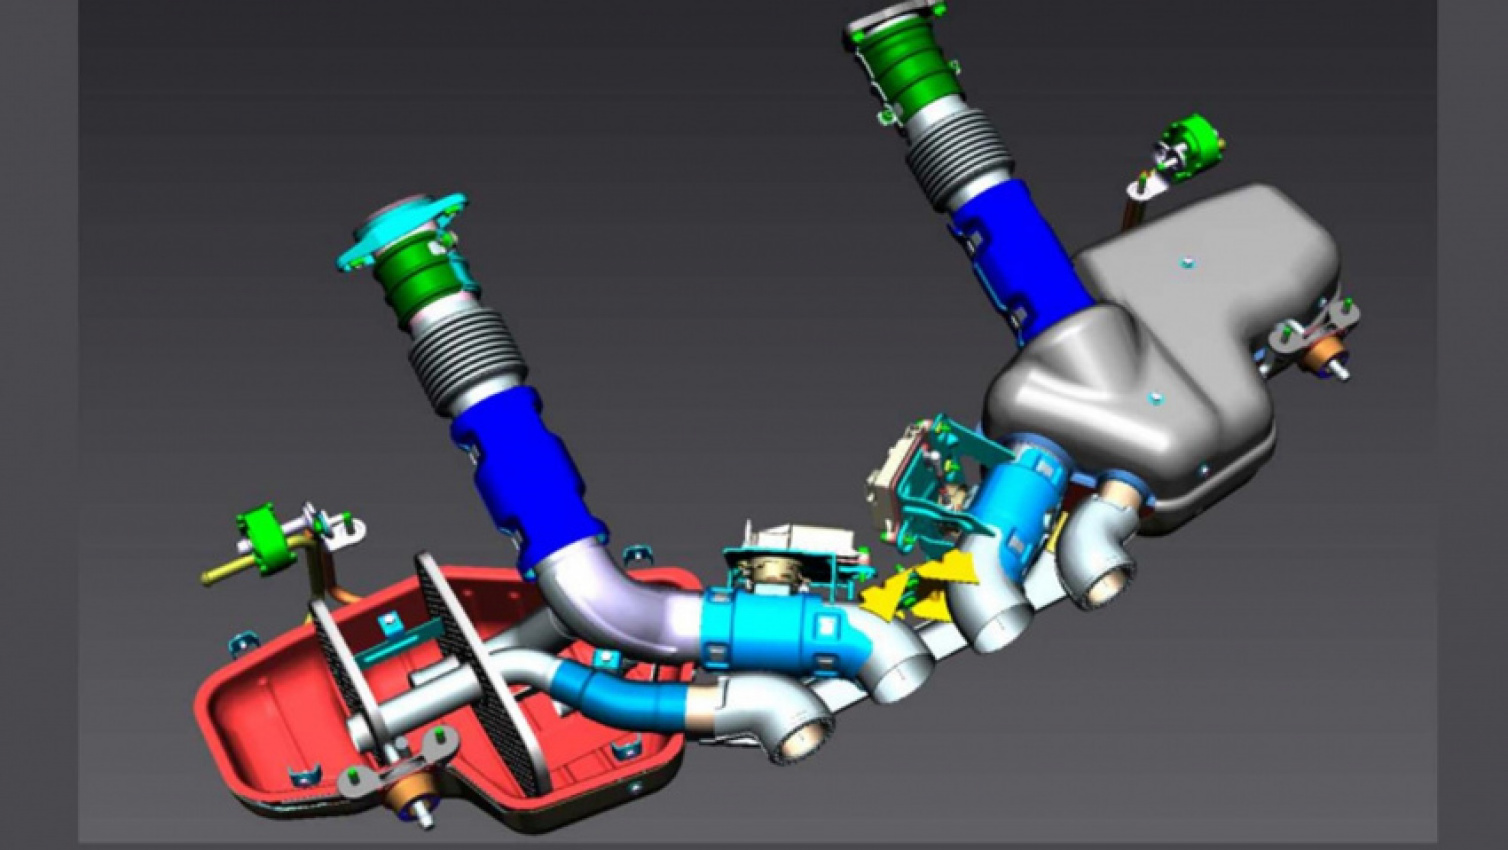 autos, cars, chevy corvette z06 c8 lt6 engine specs: deep dive into gm’s new flat-plane crank wonder!